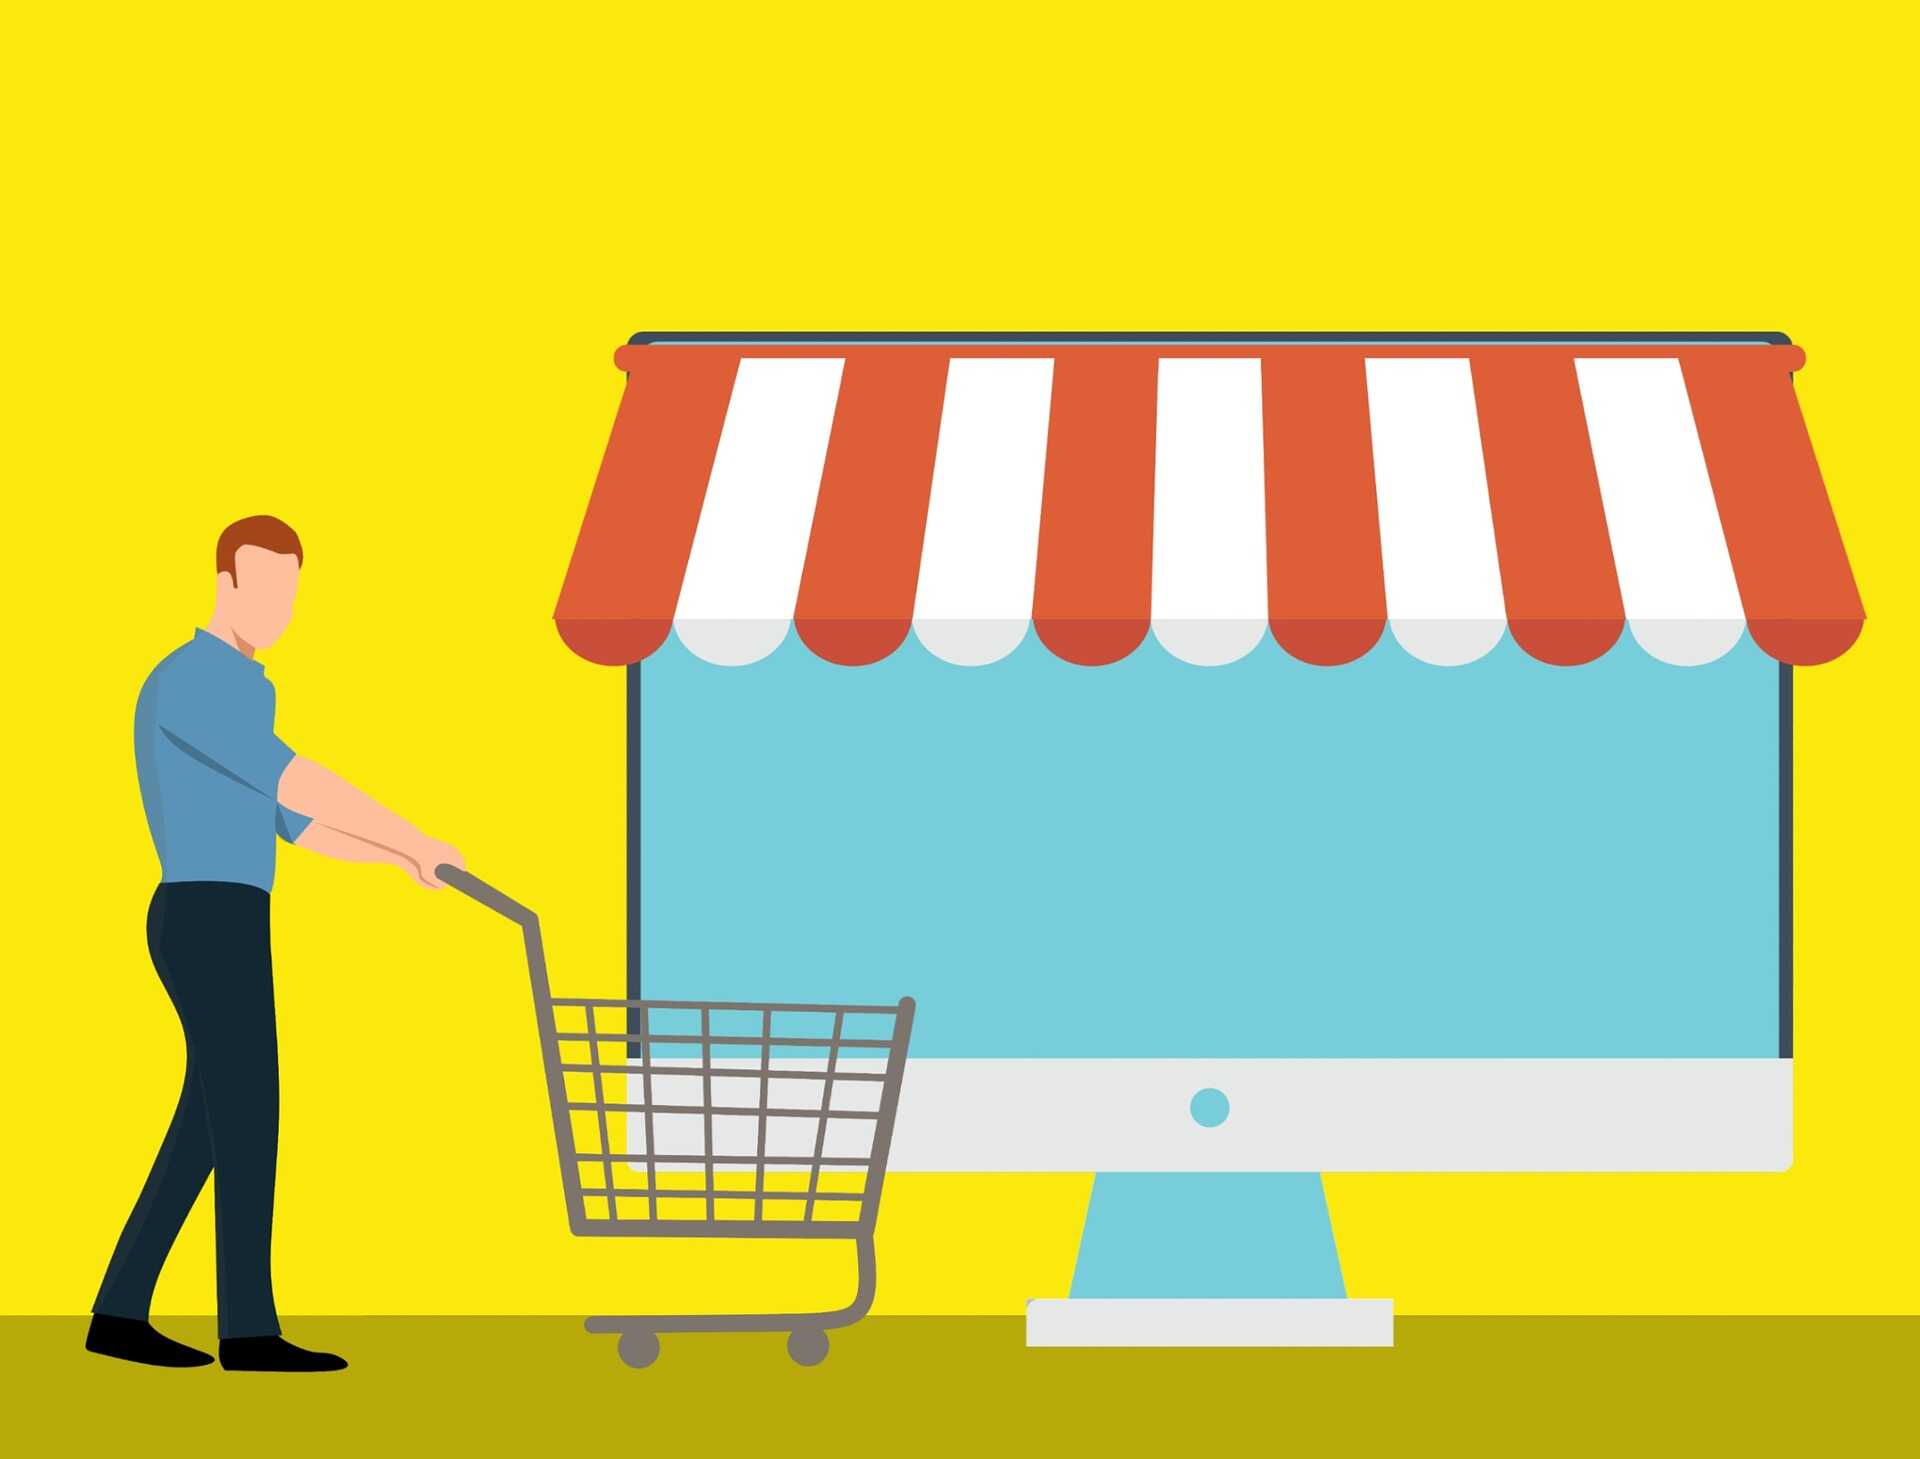 ilustração representando um marketplace com um boneco homem com um carrinho de compras e atrás dele uma tela de computador com uma lona branca e vermelha representando uma loja.